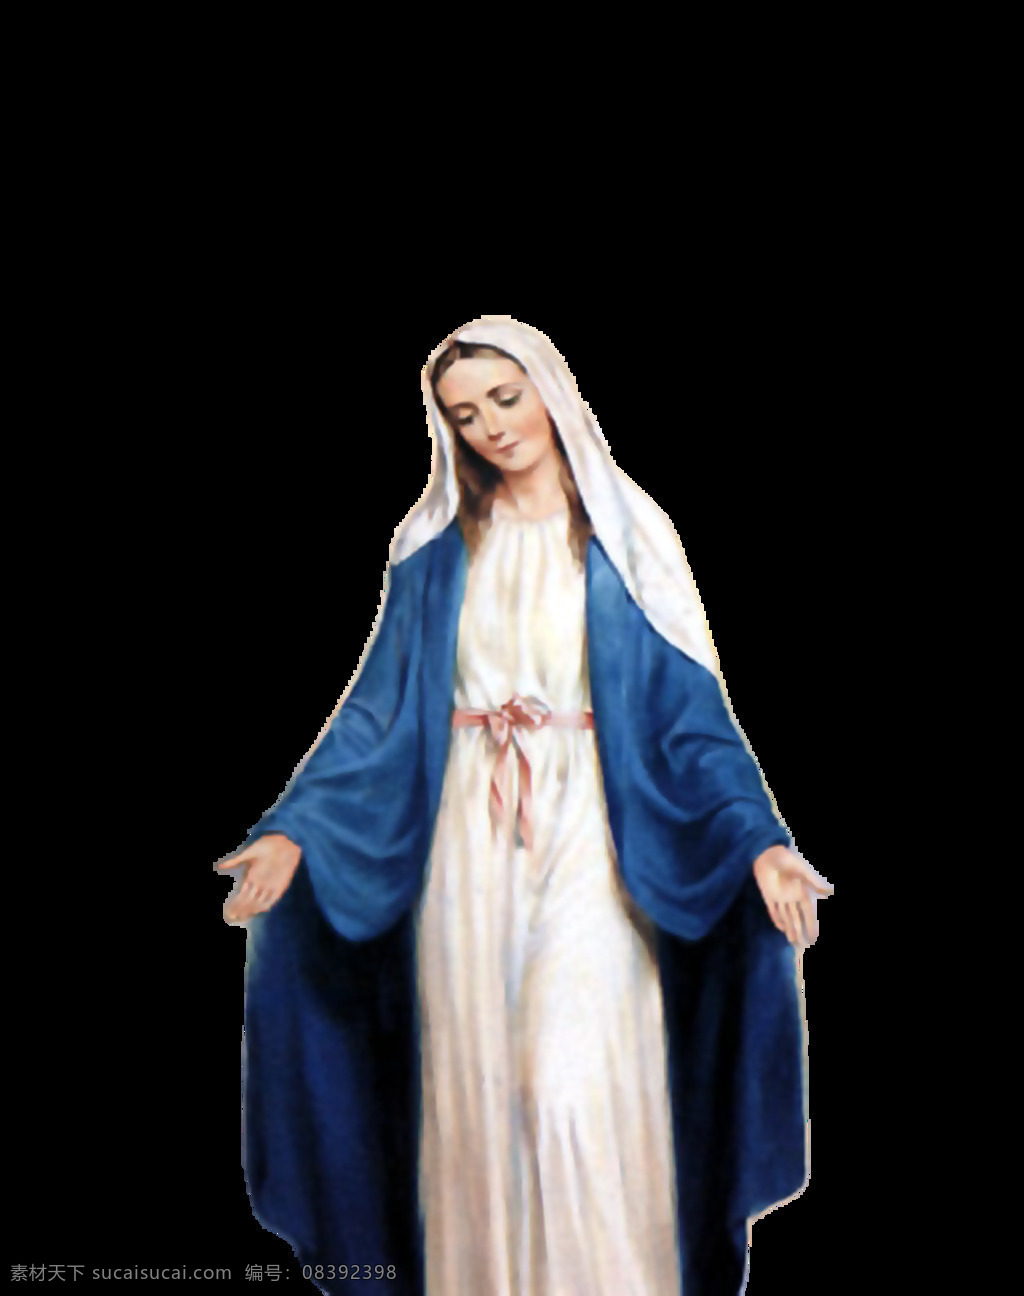 蓝色 长衣 圣母 油画 免 抠 透明 玛利亚 白描 高清 壁画 抱 耶稣 手绘 圣母像 手绘圣母像 耶稣他娘像 圣母油画像